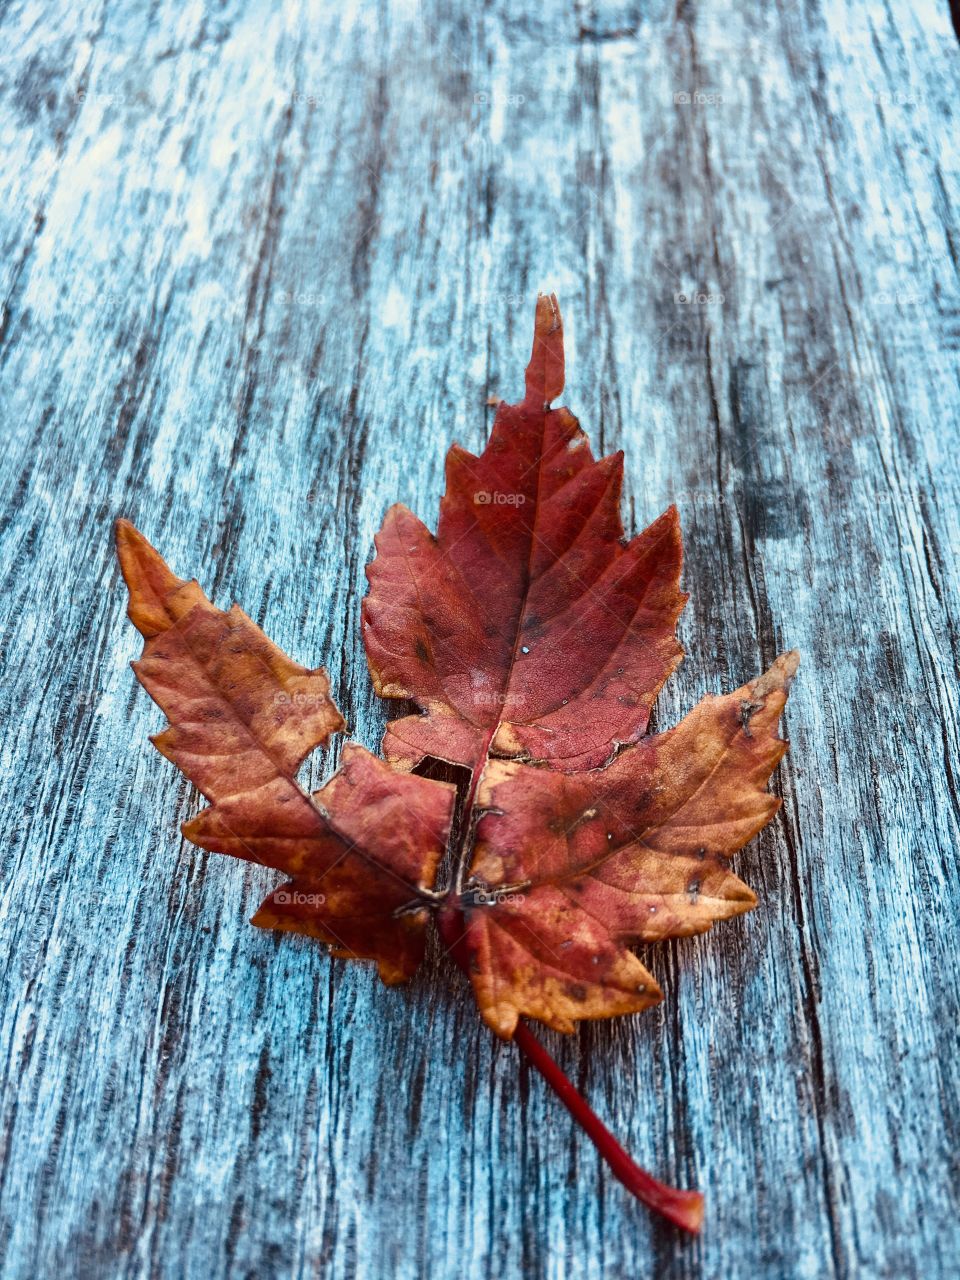 Red and orange leaf on wood